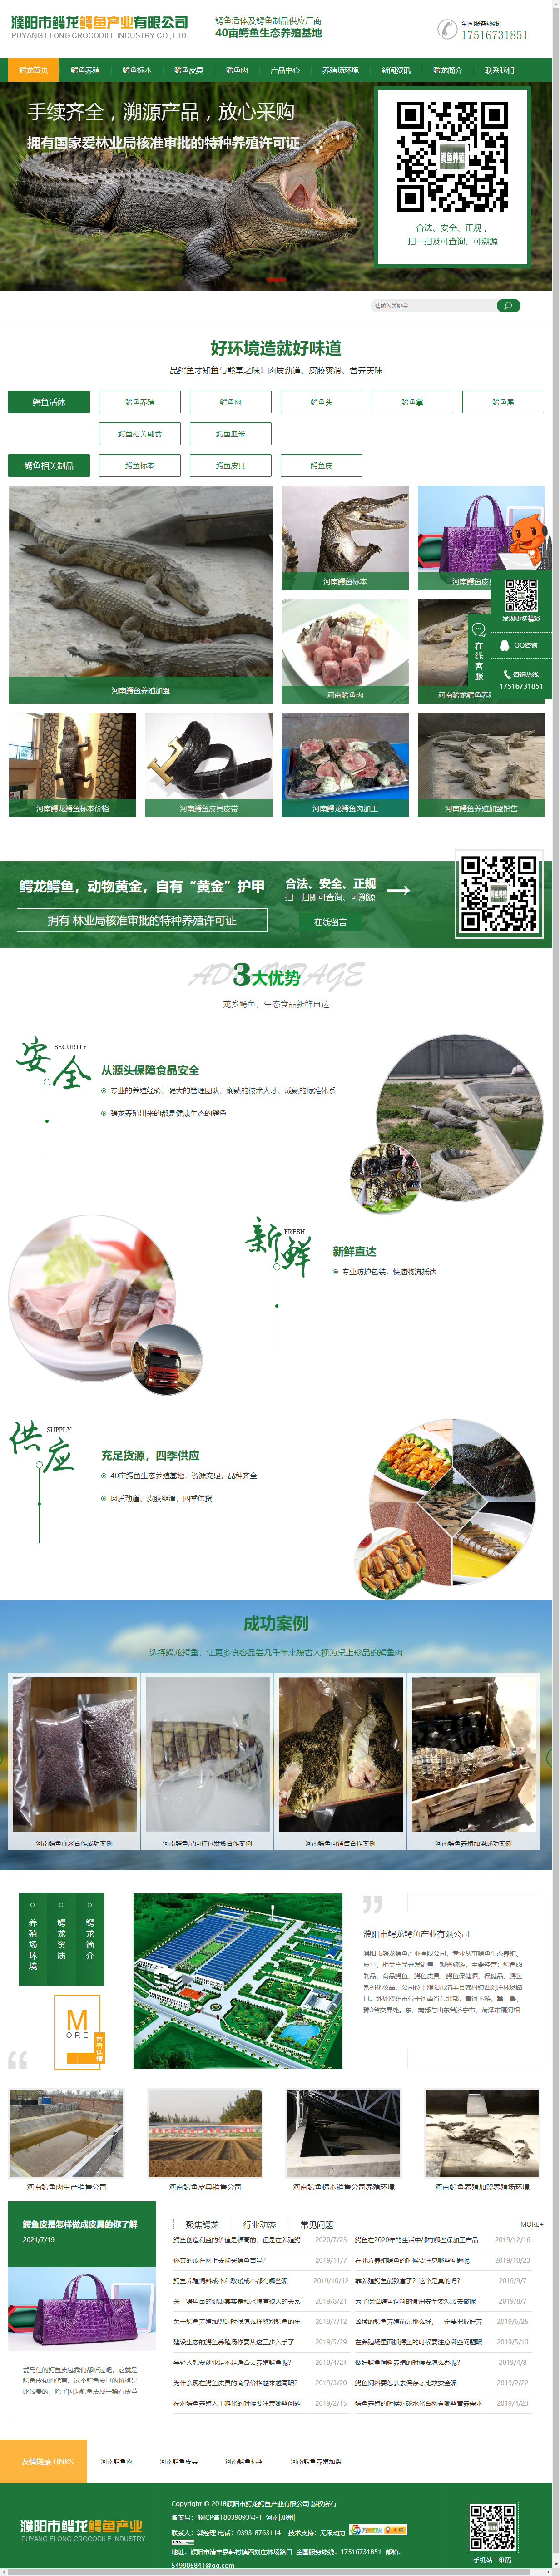 濮阳市鳄龙鳄鱼产业有限公司网站案例